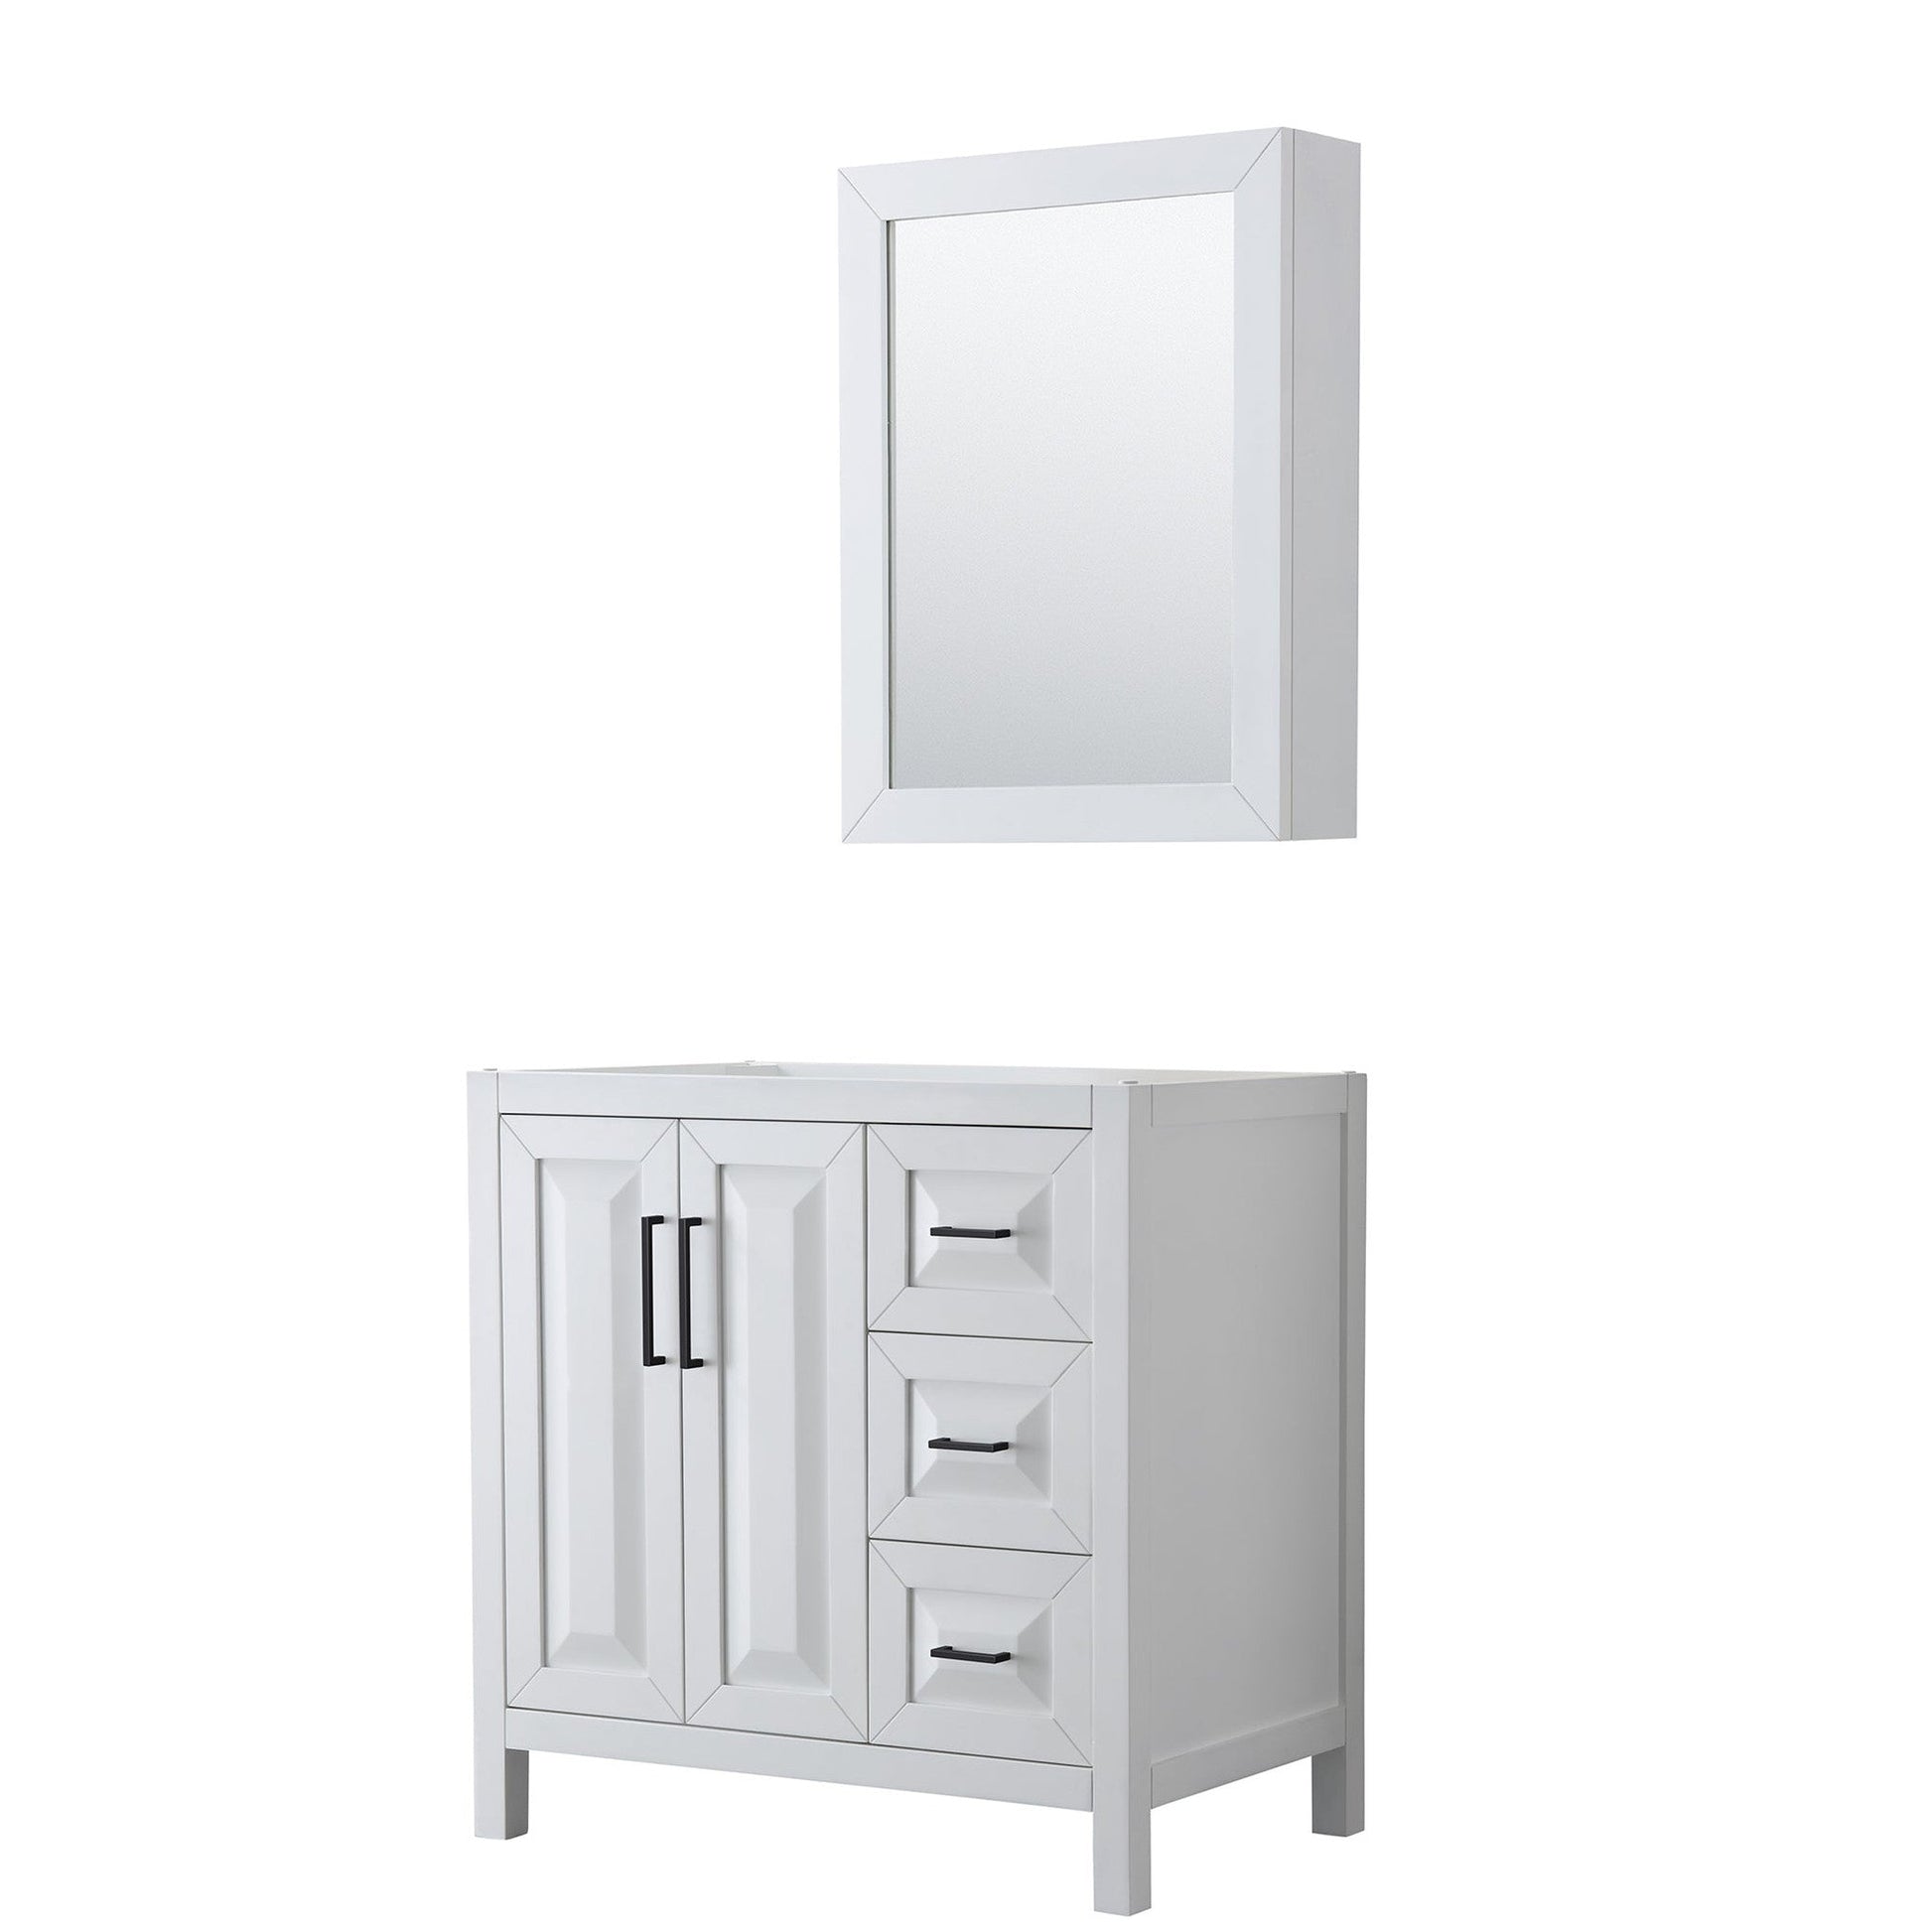 Daria 36" Single Bathroom Vanity in White, No Countertop, No Sink, Matte Black Trim, Medicine Cabinet